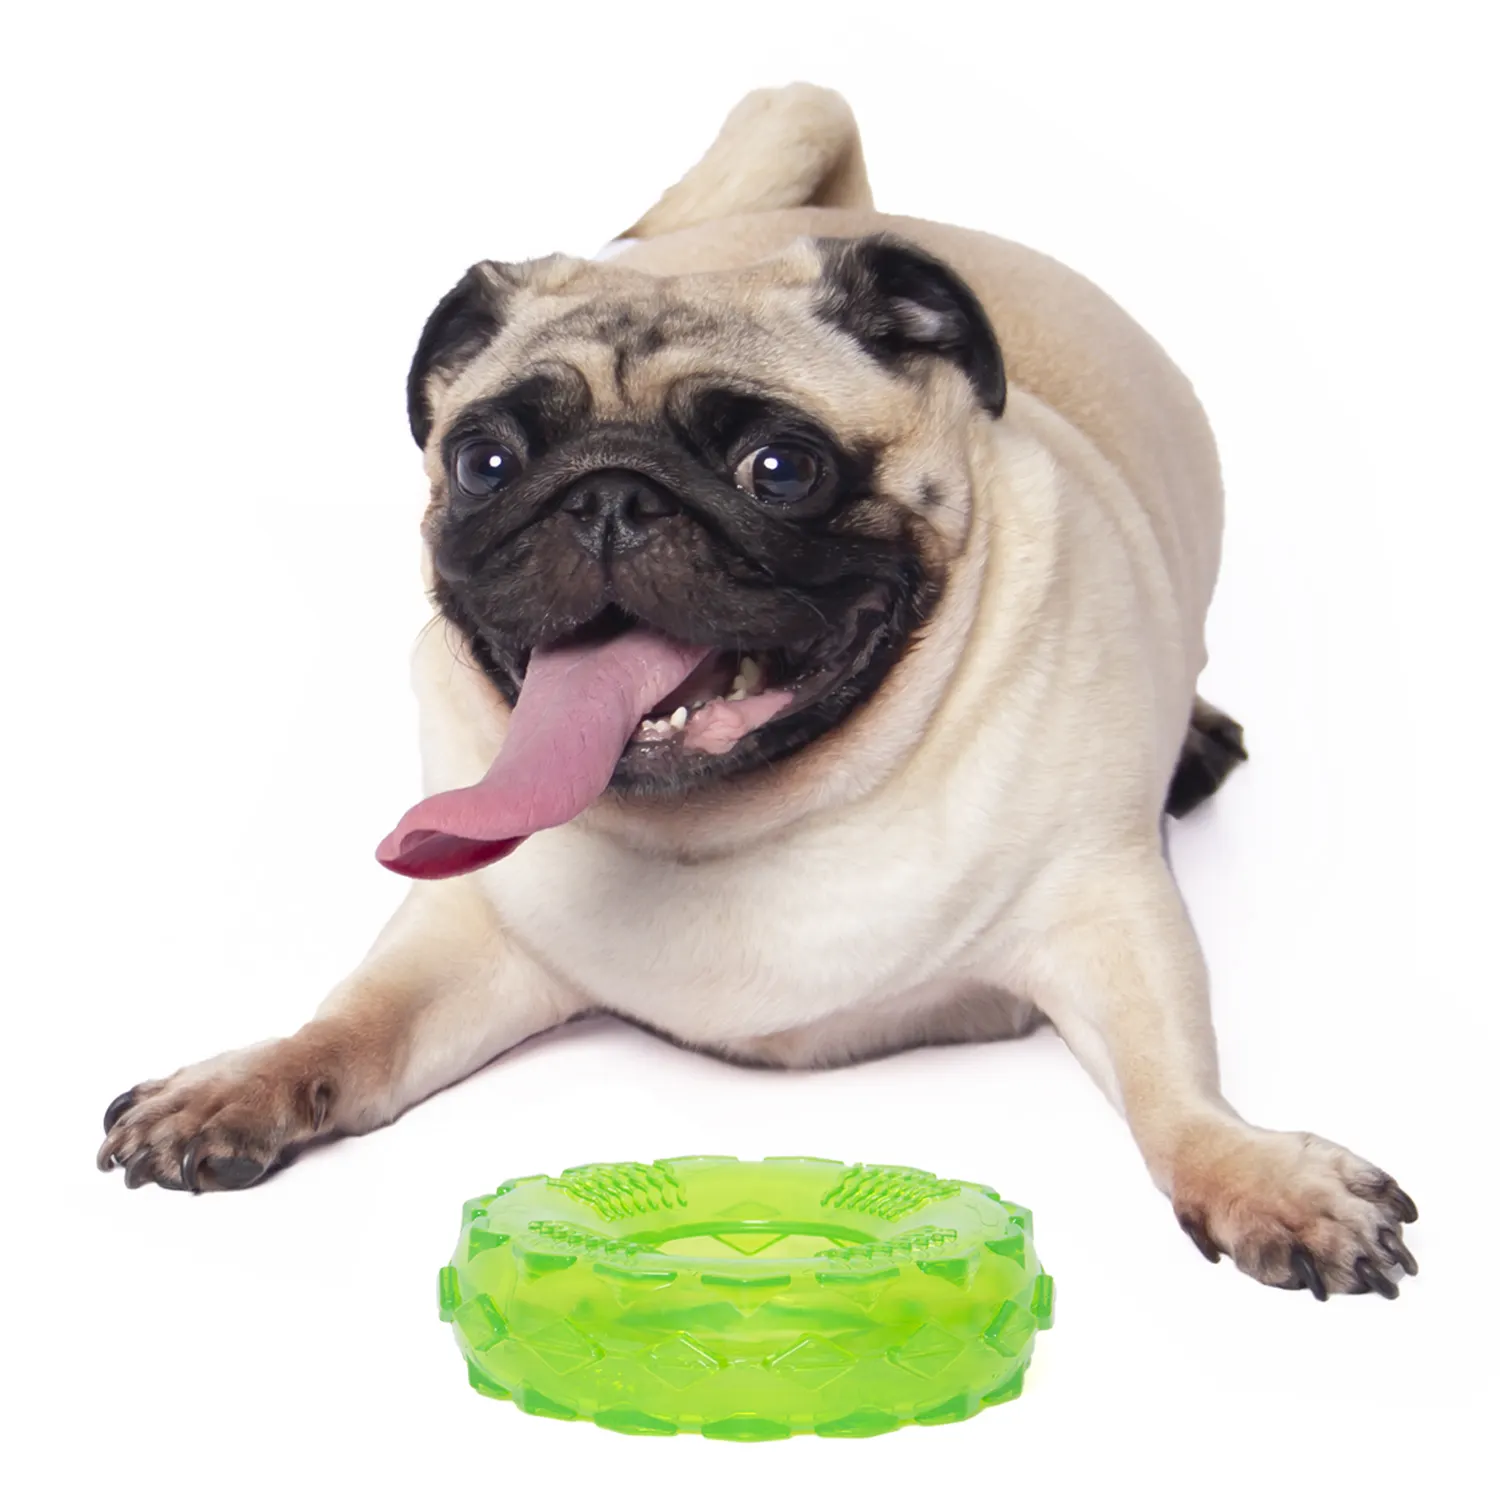 Wholesales रंगीन टिकाऊ ठोस चबाने कुत्ते के खिलौने TPR टायर + चीख़नेवाला पालतू चबाना खिलौने-ग्रीन